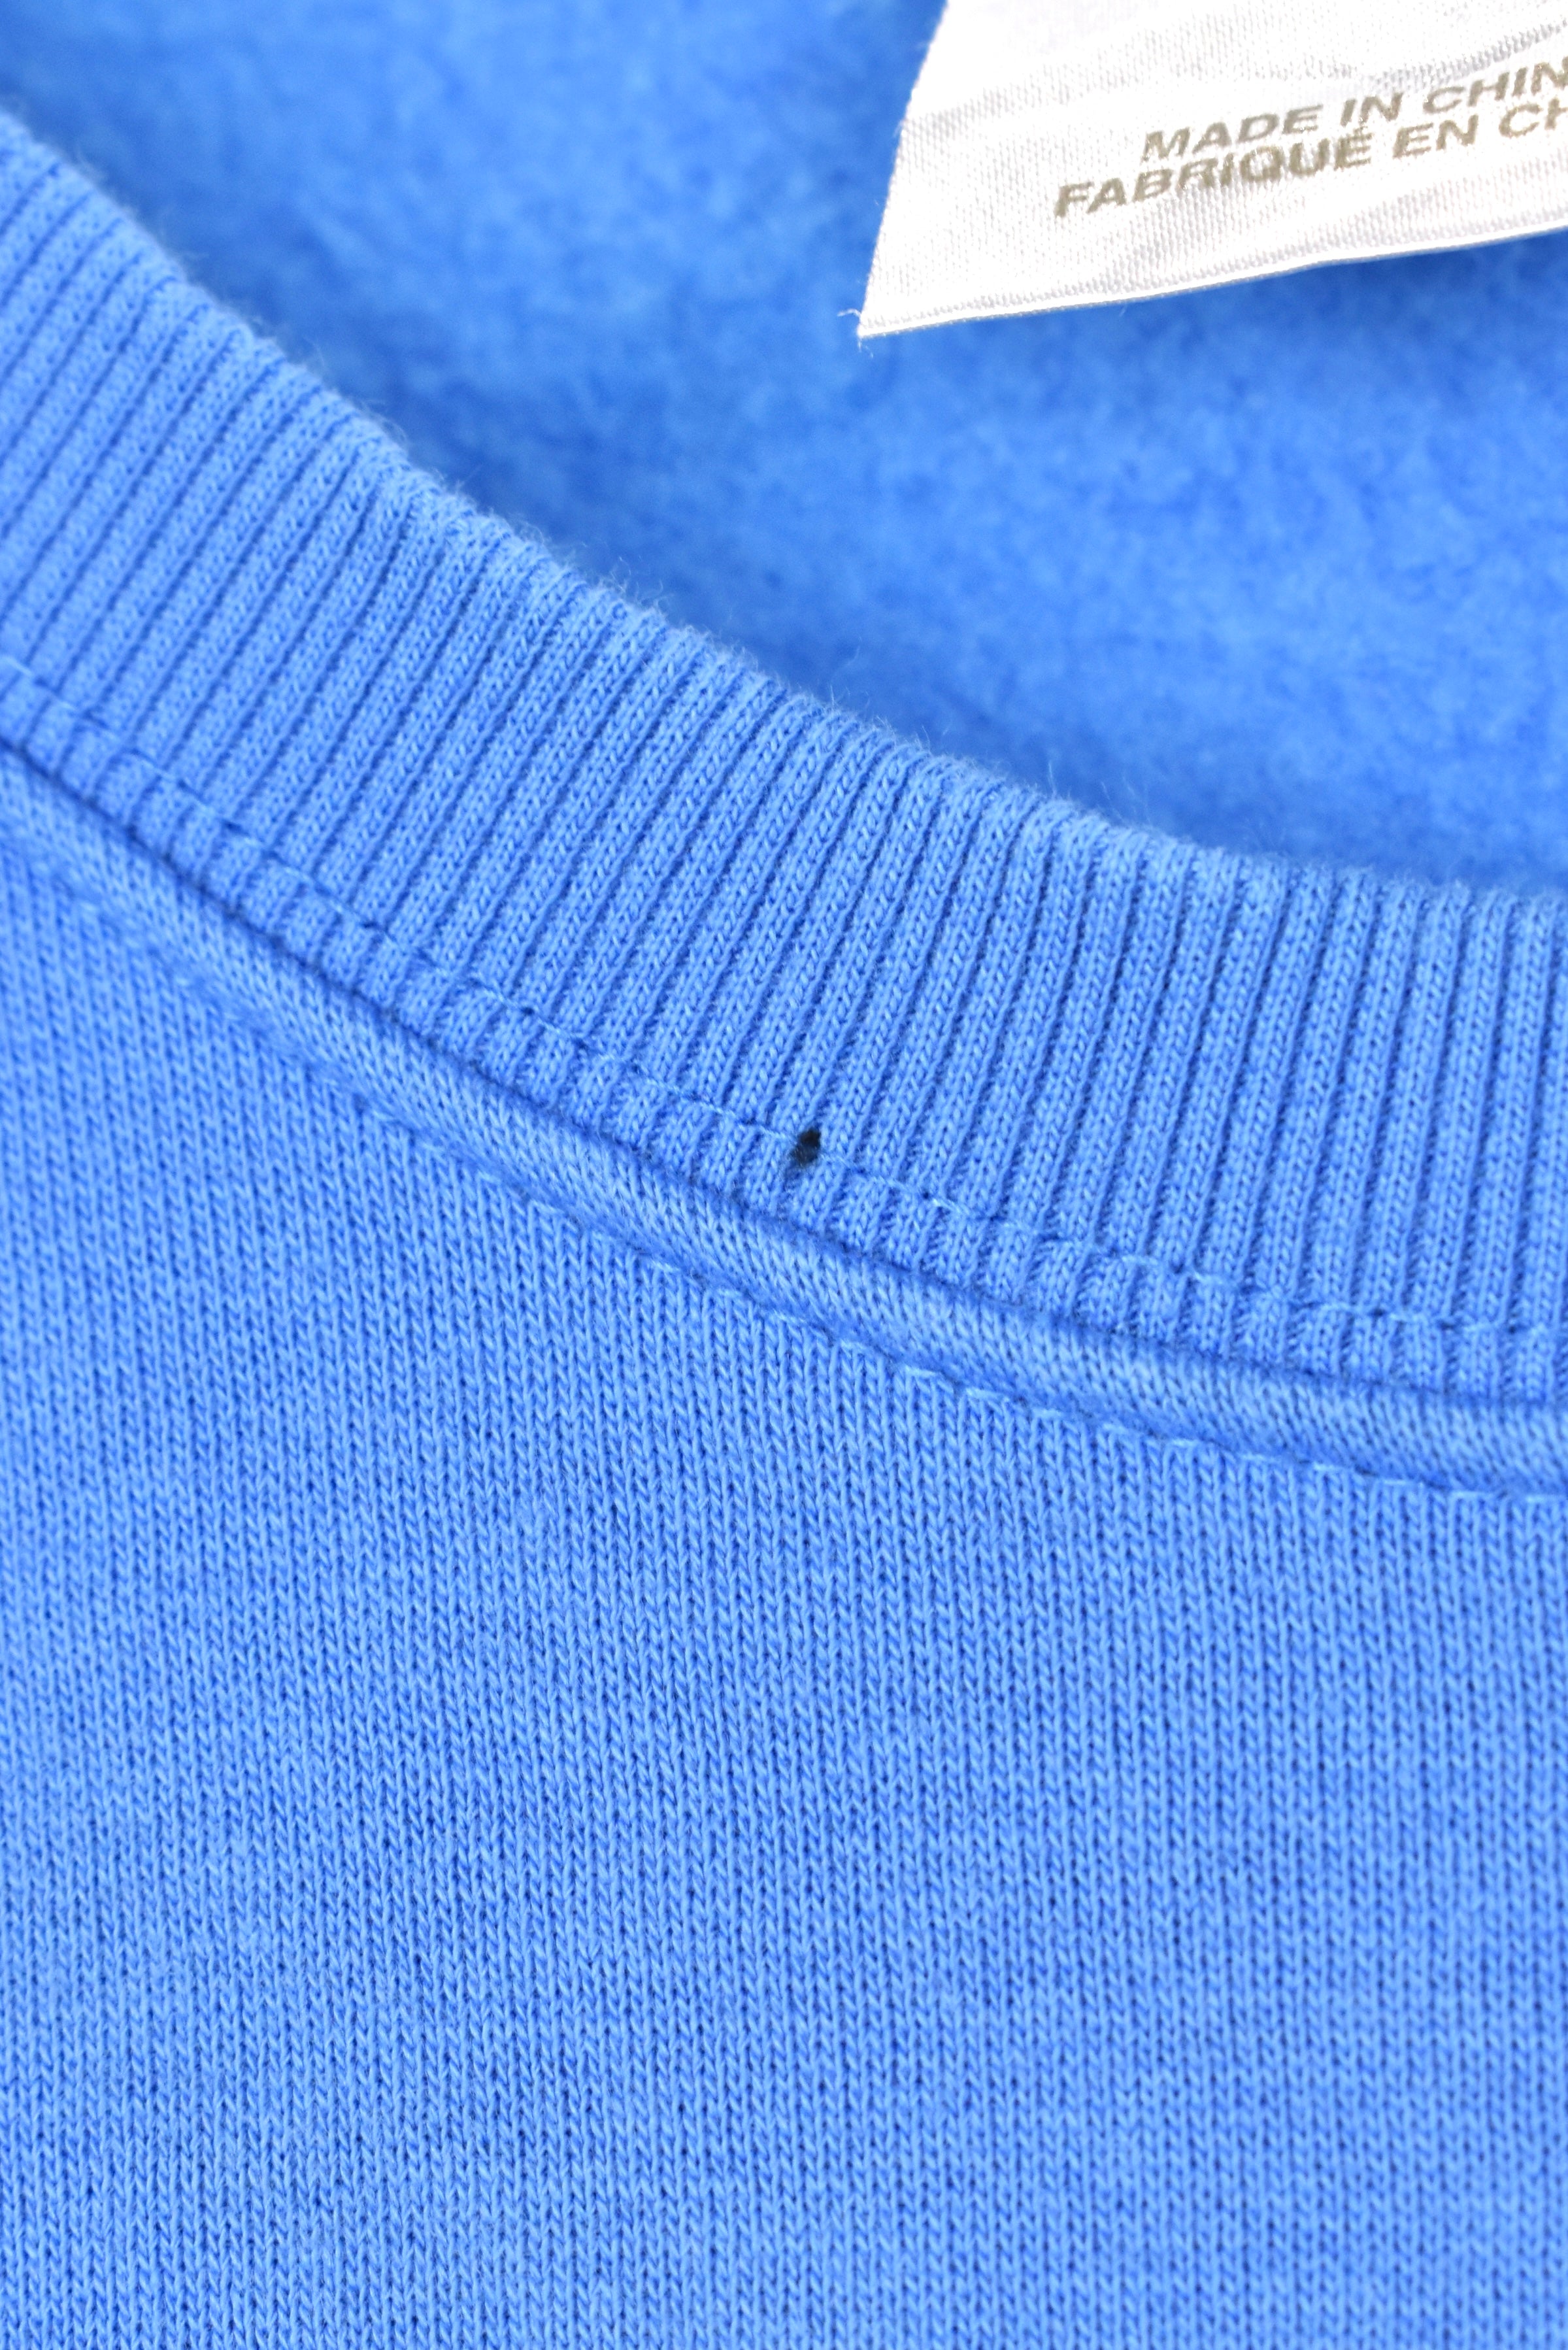 Vintage Adidas sweatshirt, blue embroidered crewneck - AU L ADIDAS